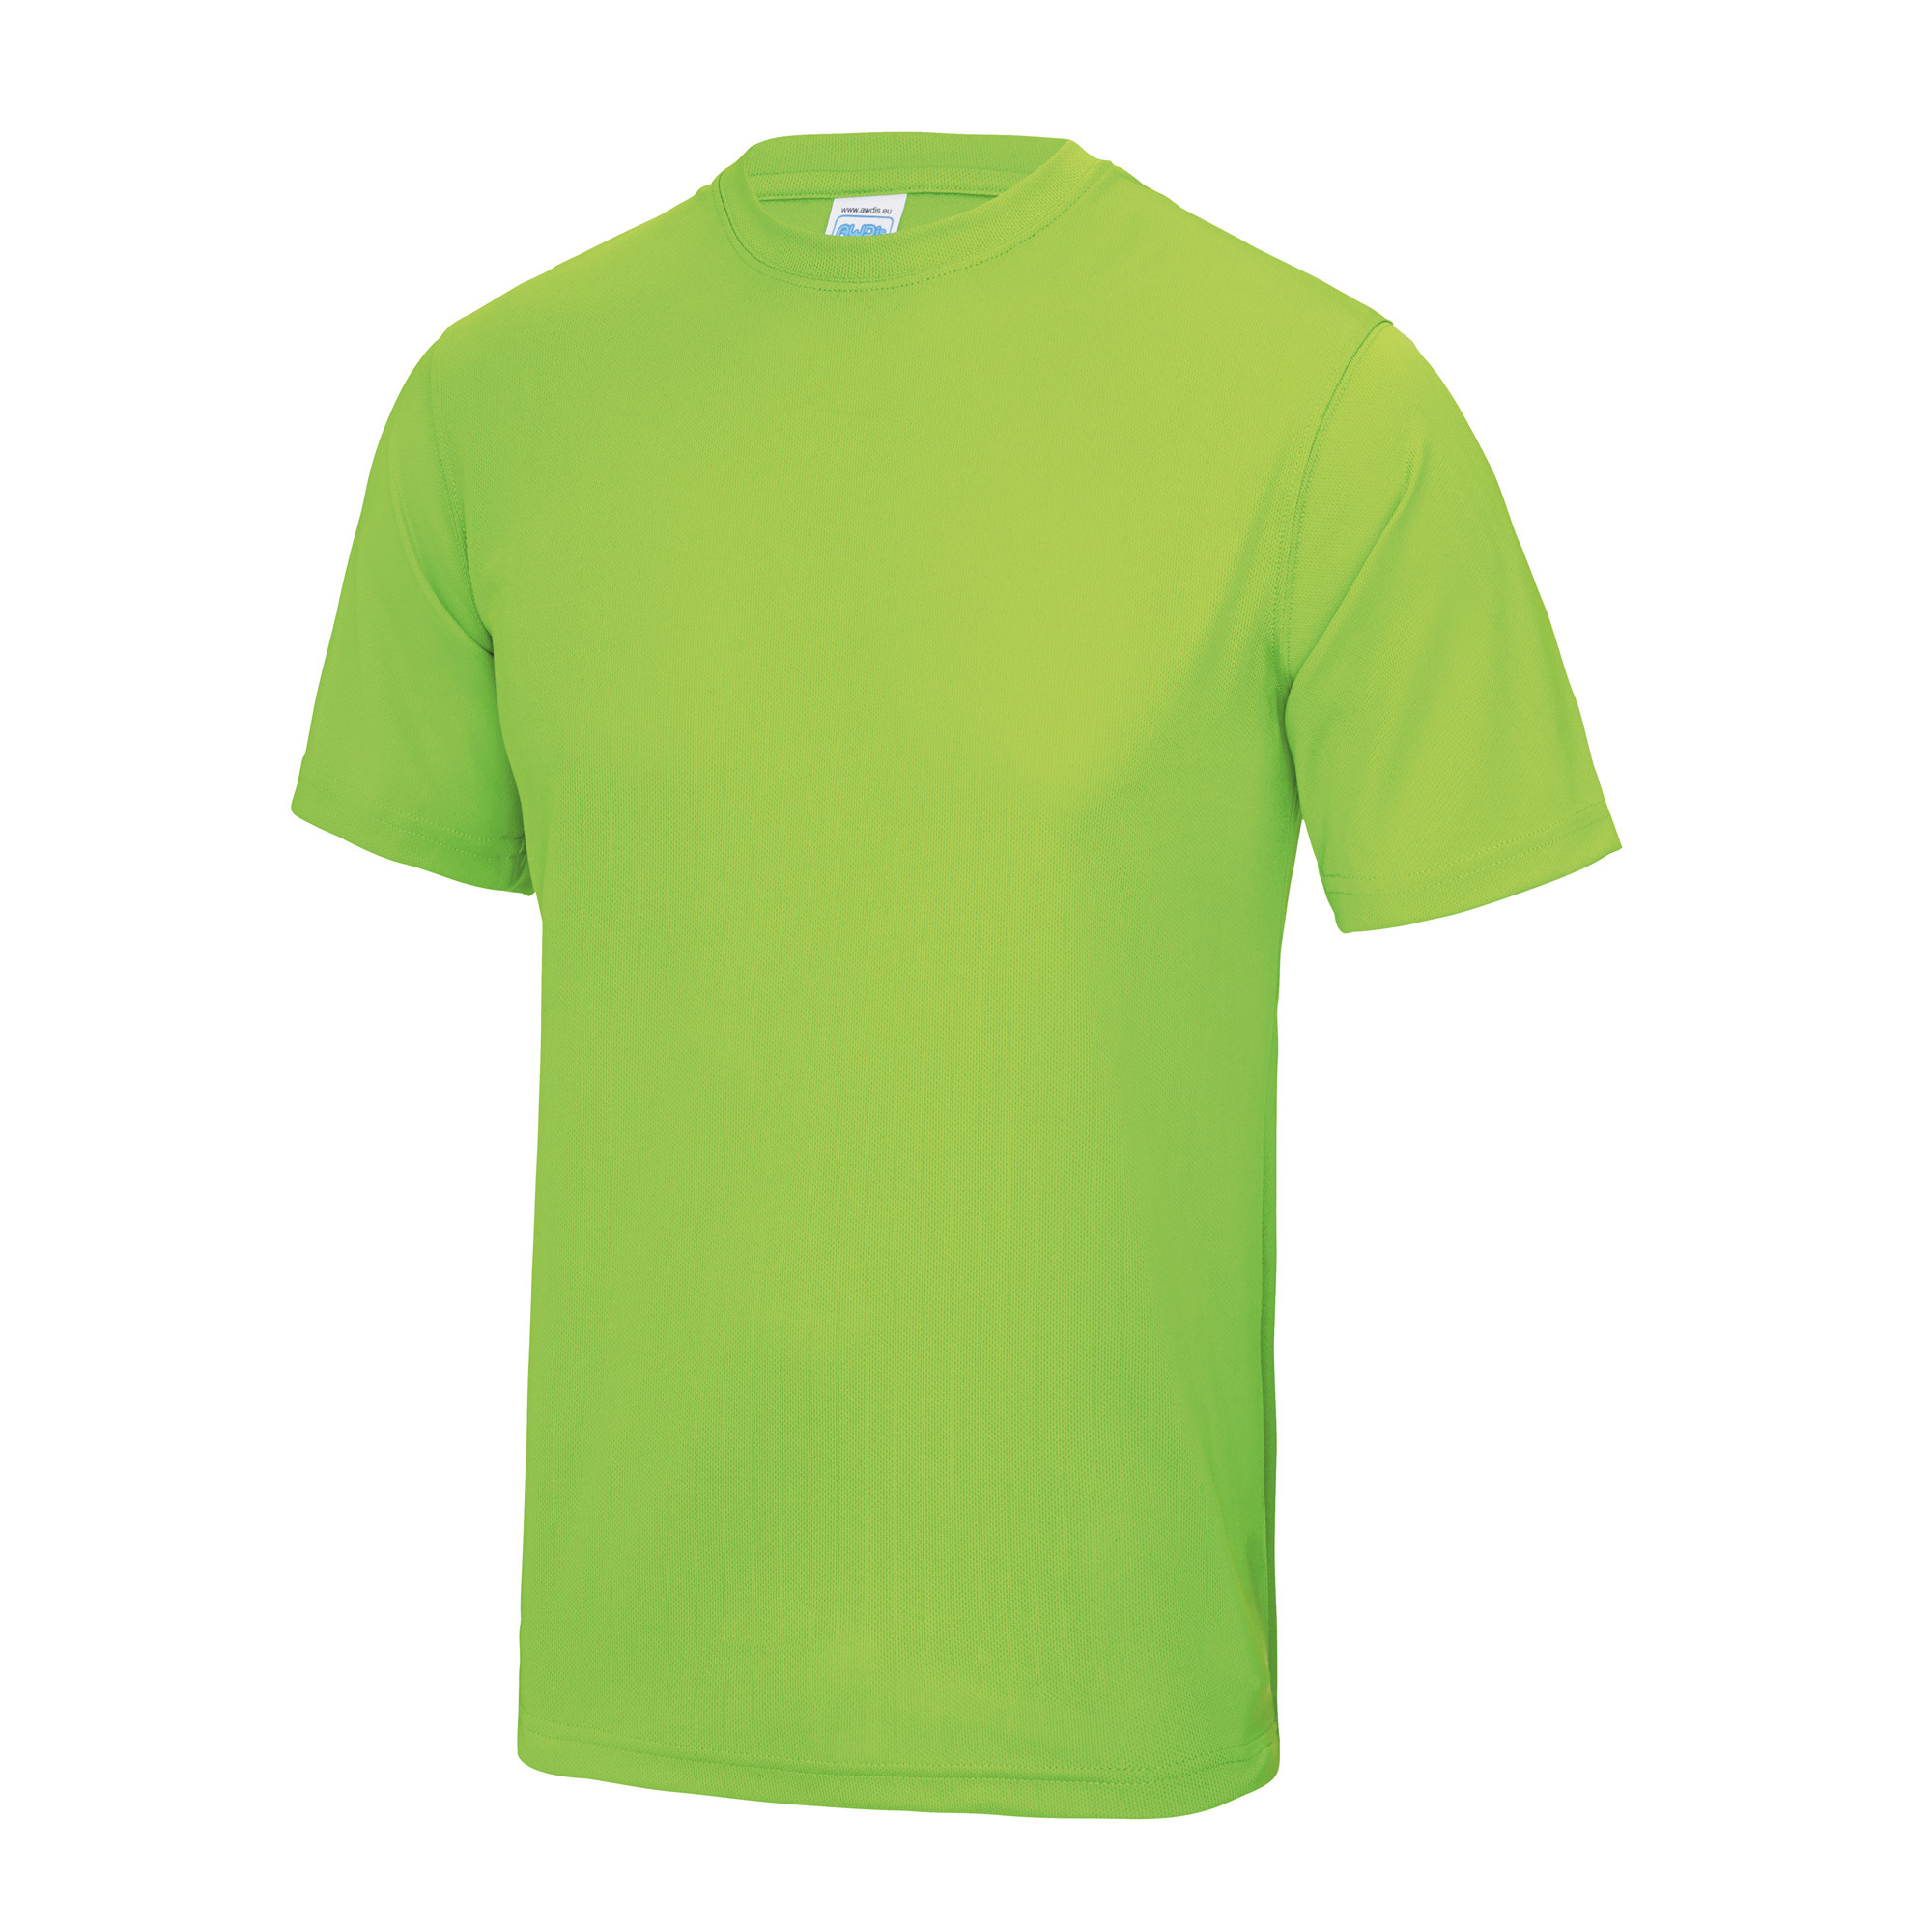 Adults Blind Runner Cool T Shirt